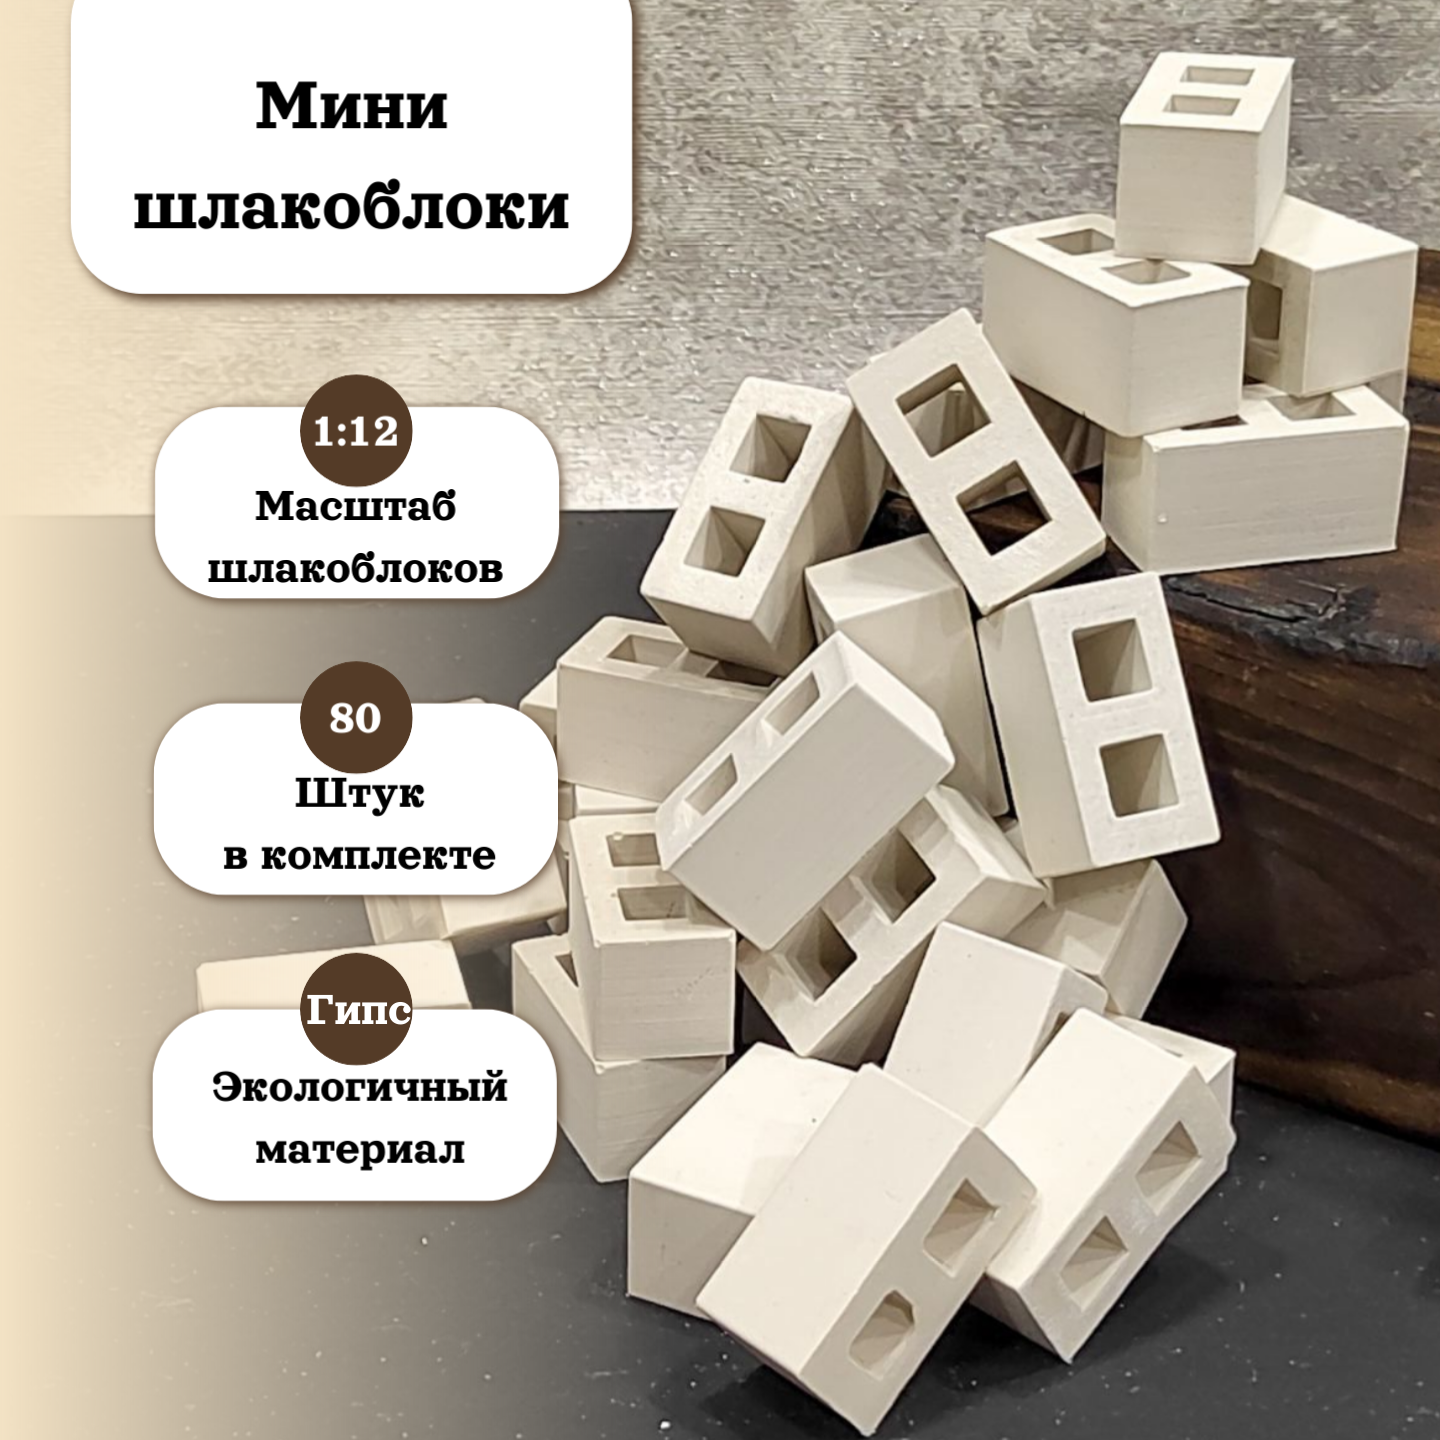 Мини-стройка - конструктор из шлакоблоков в масштабе 1/12 (80 блоков)